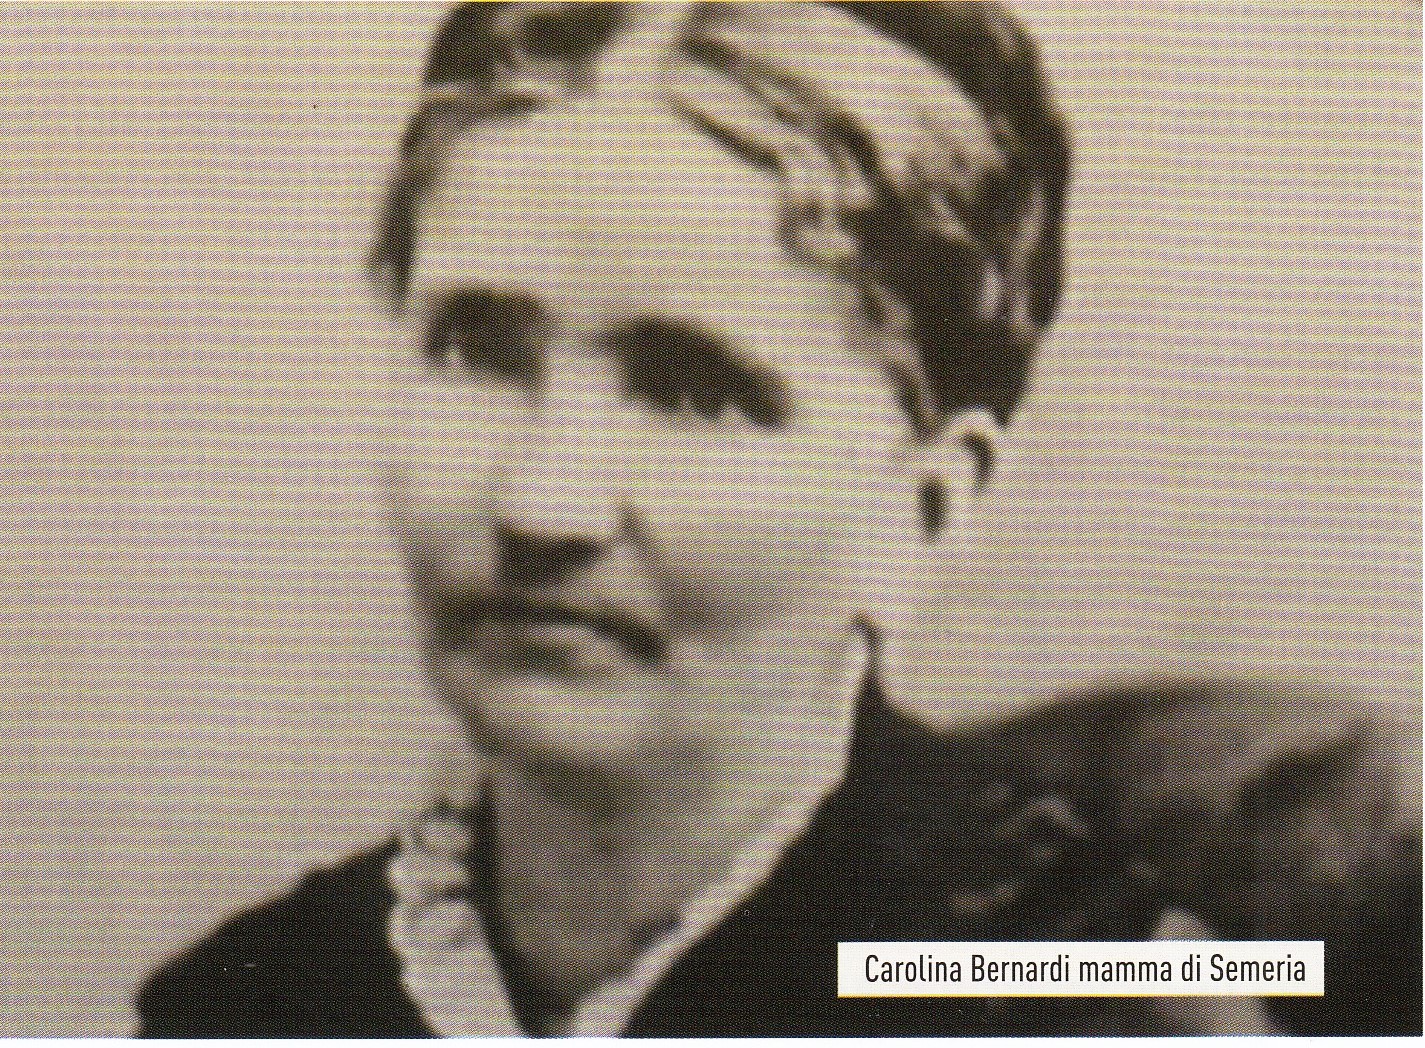 Carolina Bernardi madre di P. Semeria